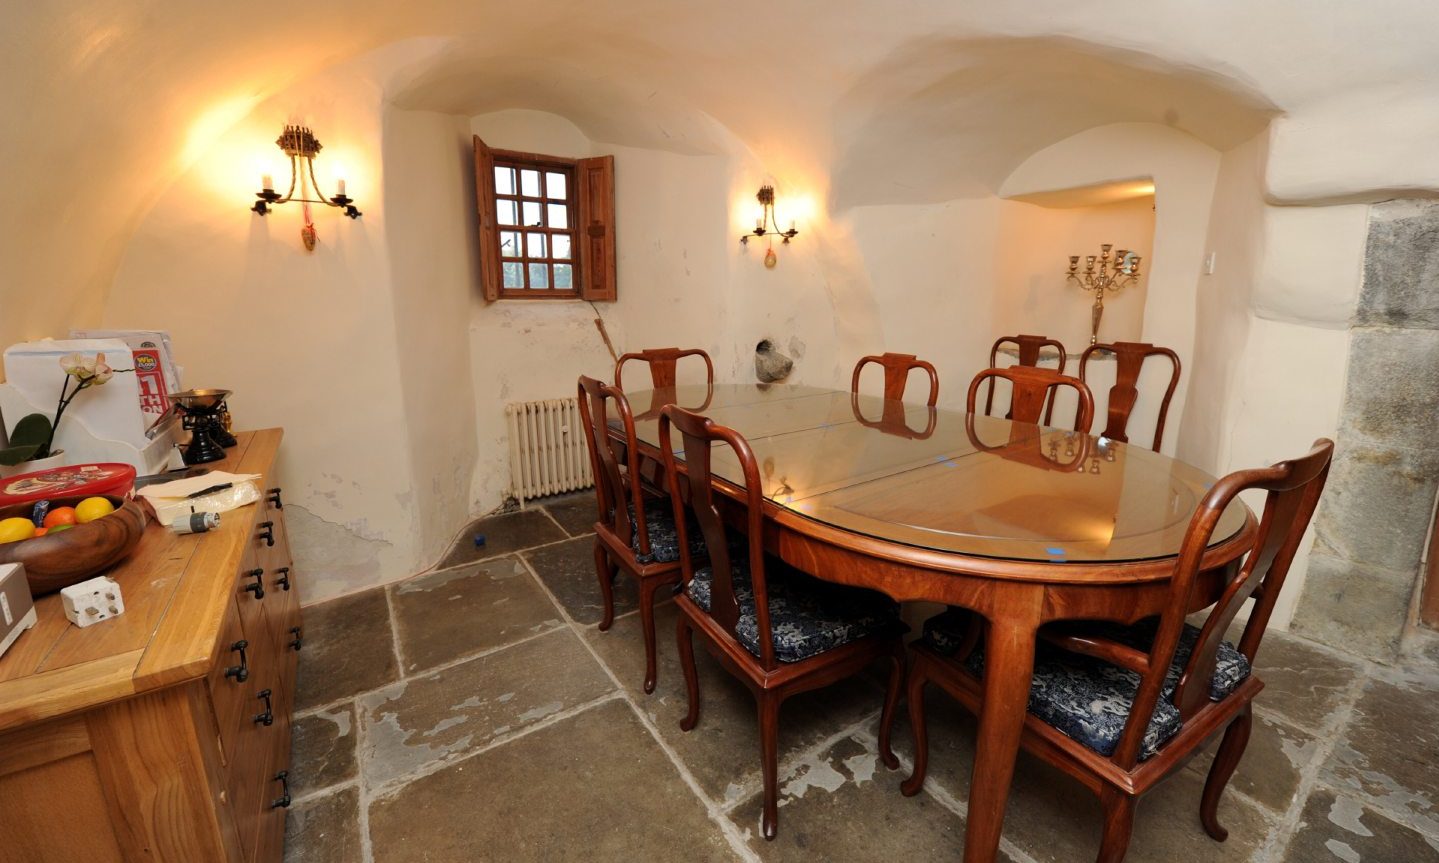 A dining area inside the castle